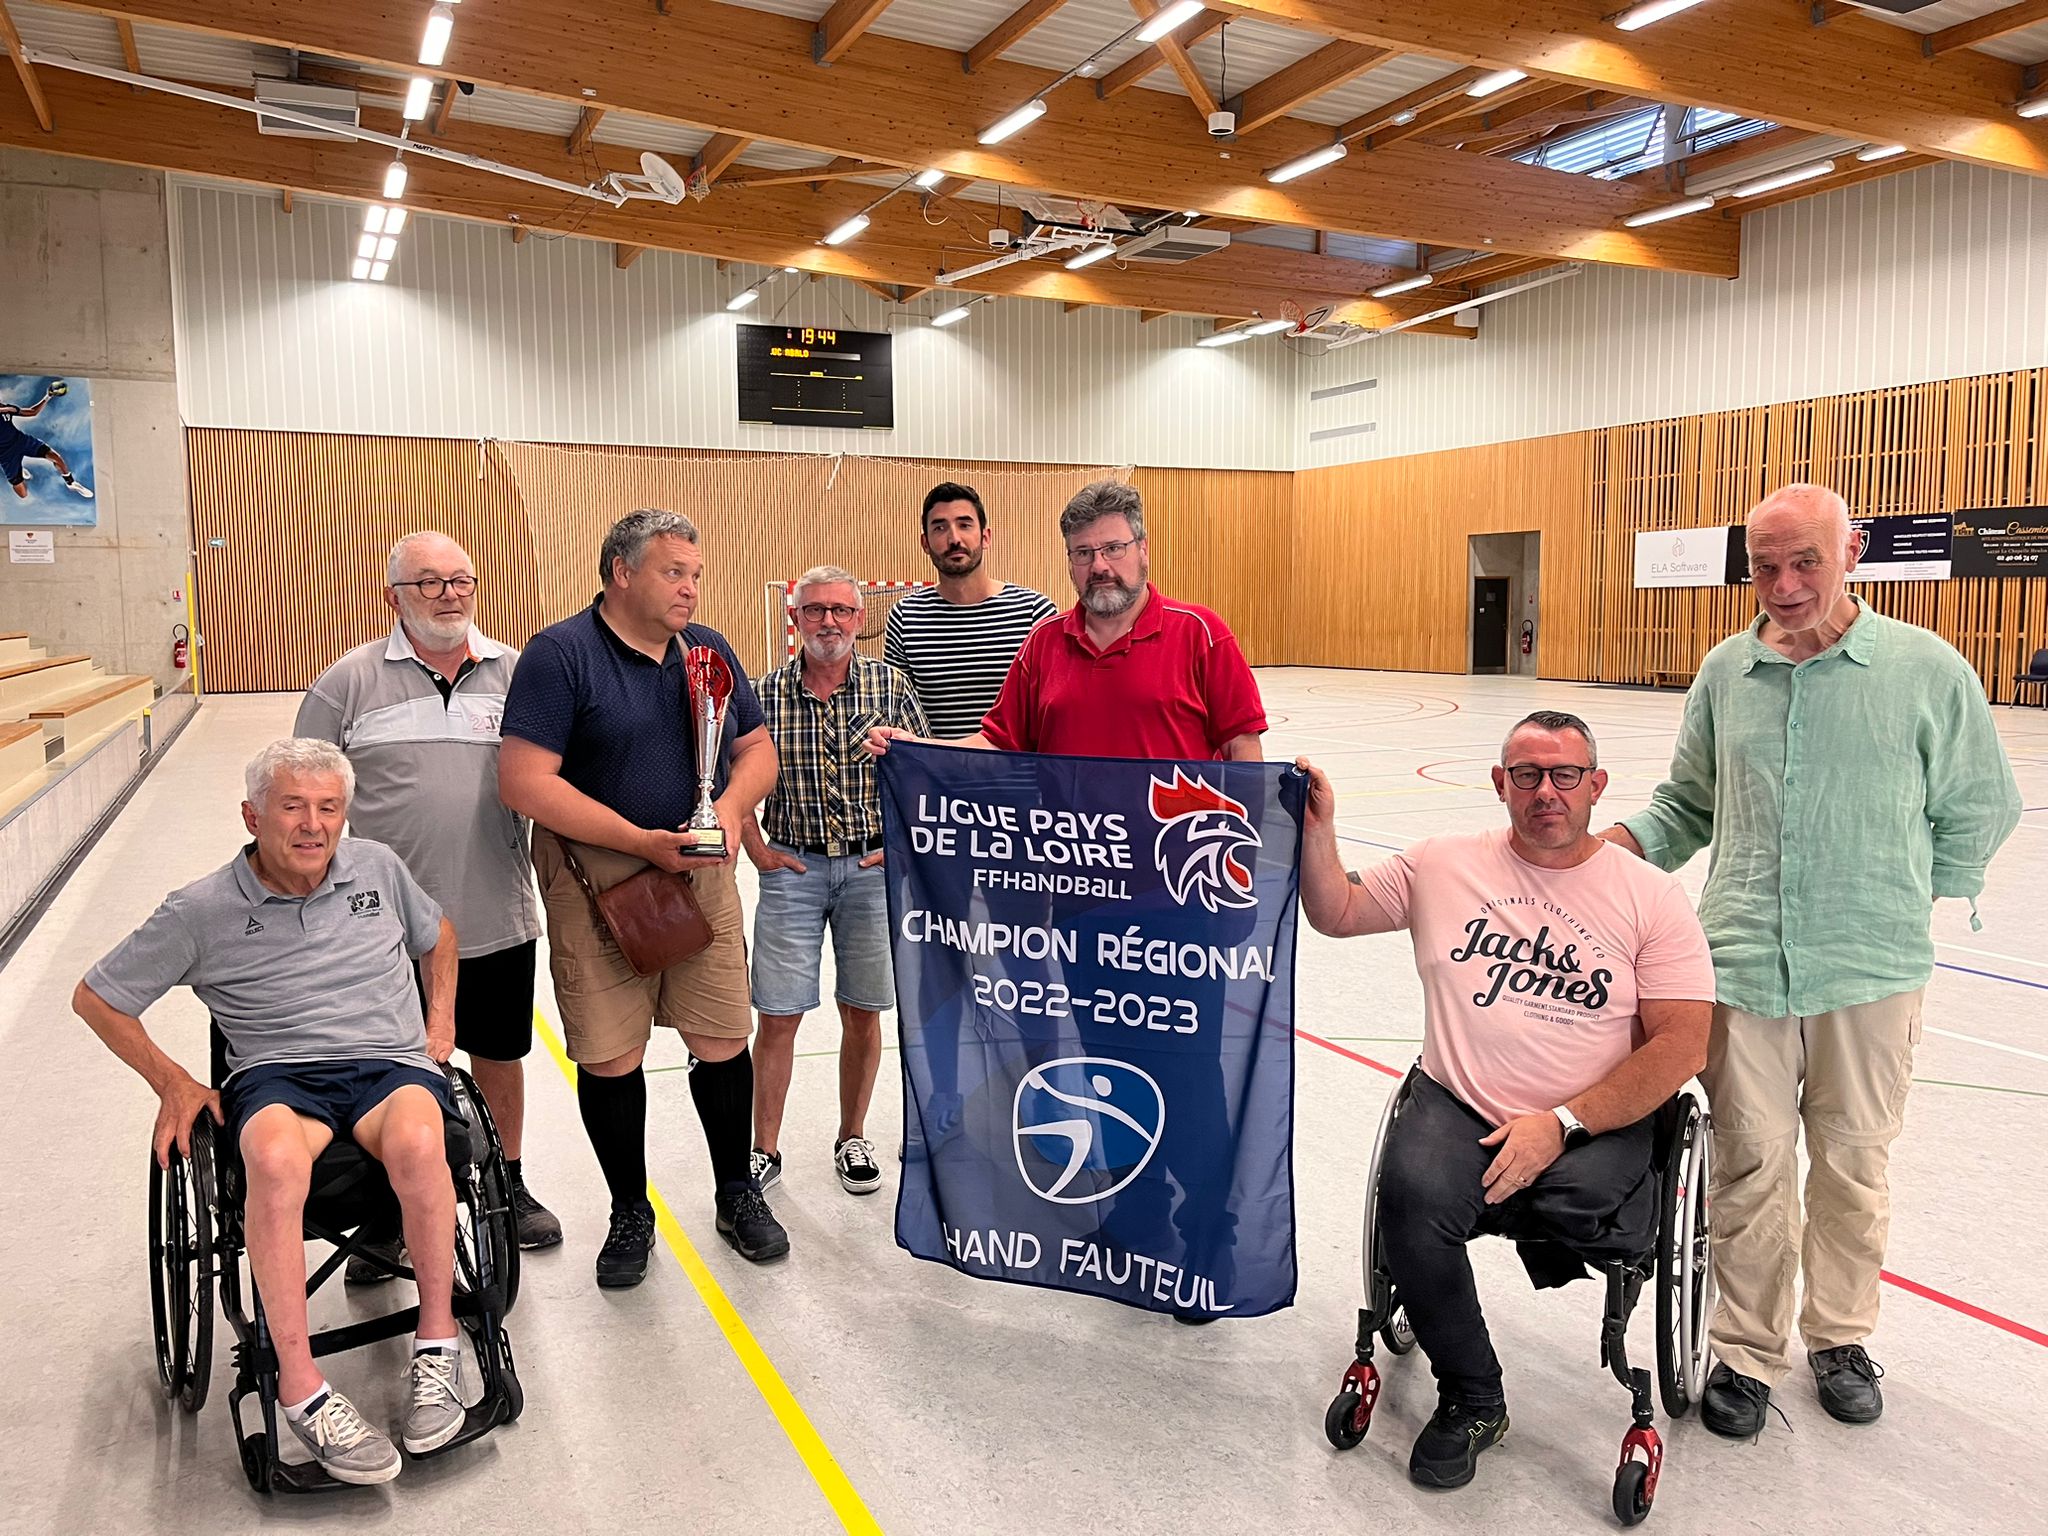 Le hand fauteuil sébastiennais champion régional